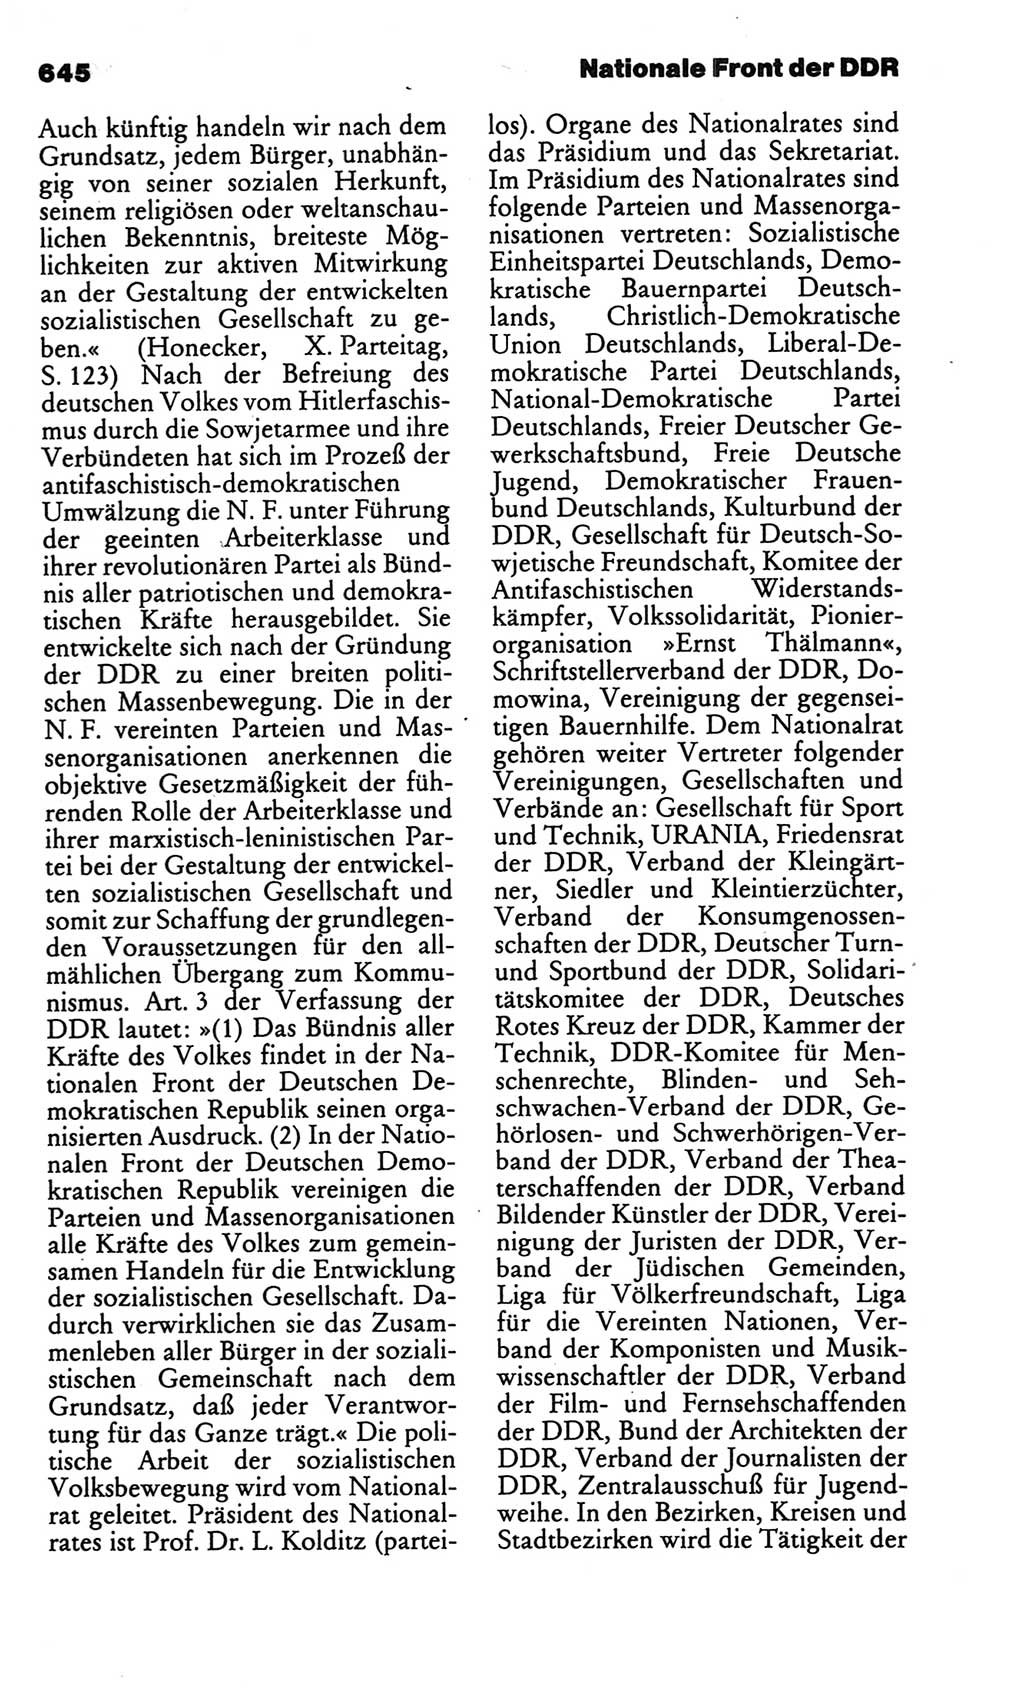 Kleines politisches Wörterbuch [Deutsche Demokratische Republik (DDR)] 1986, Seite 645 (Kl. pol. Wb. DDR 1986, S. 645)